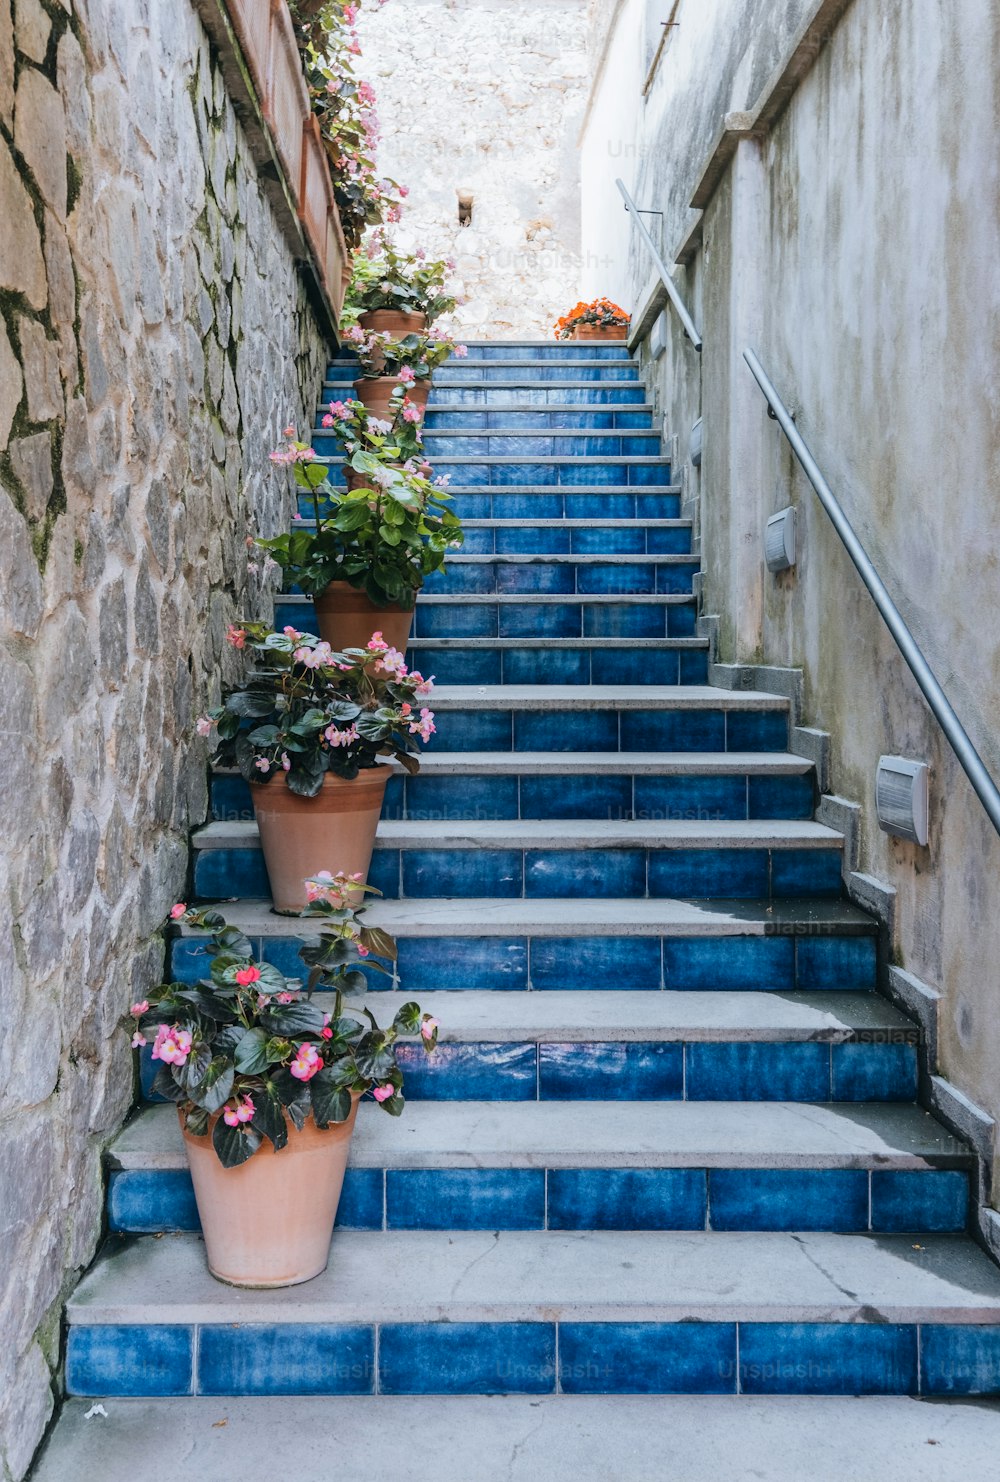 鉢植えの青い階段のセット